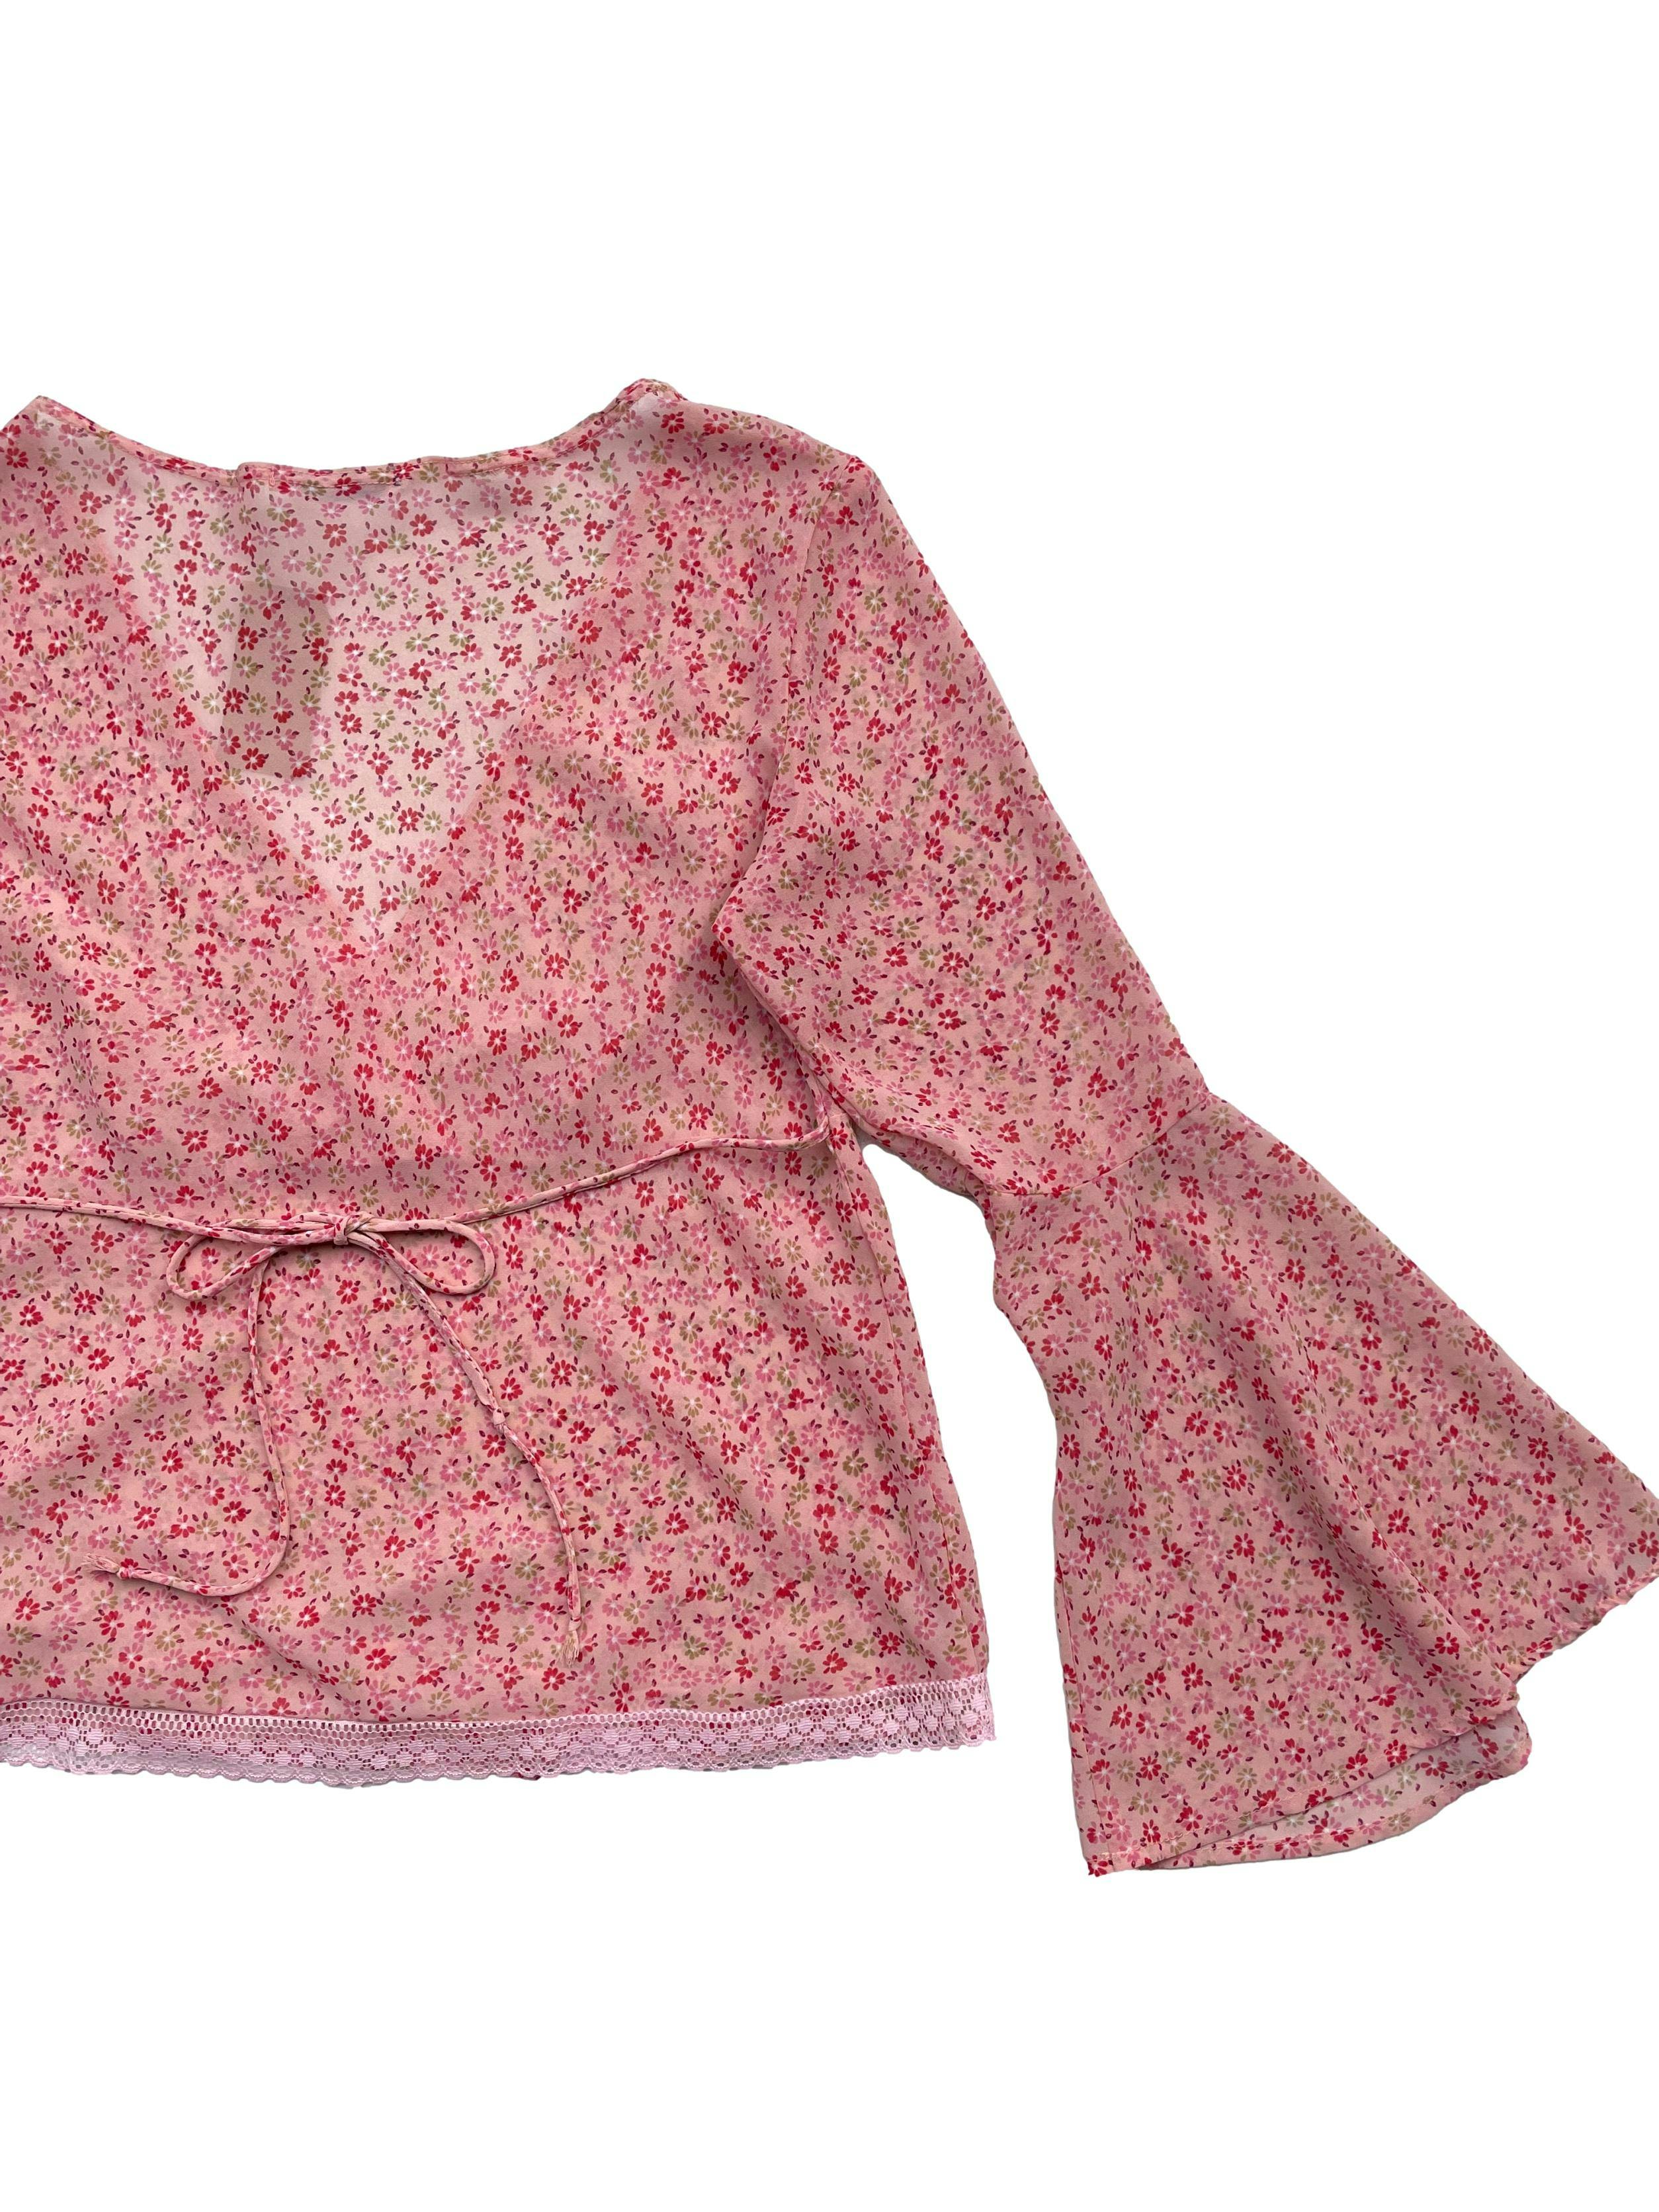 Blusa de gasa rosada con florcitas, mangas campana, se amarra a la cintura y blonda en la basta. Busto: 92cm, Largo: 53cm 